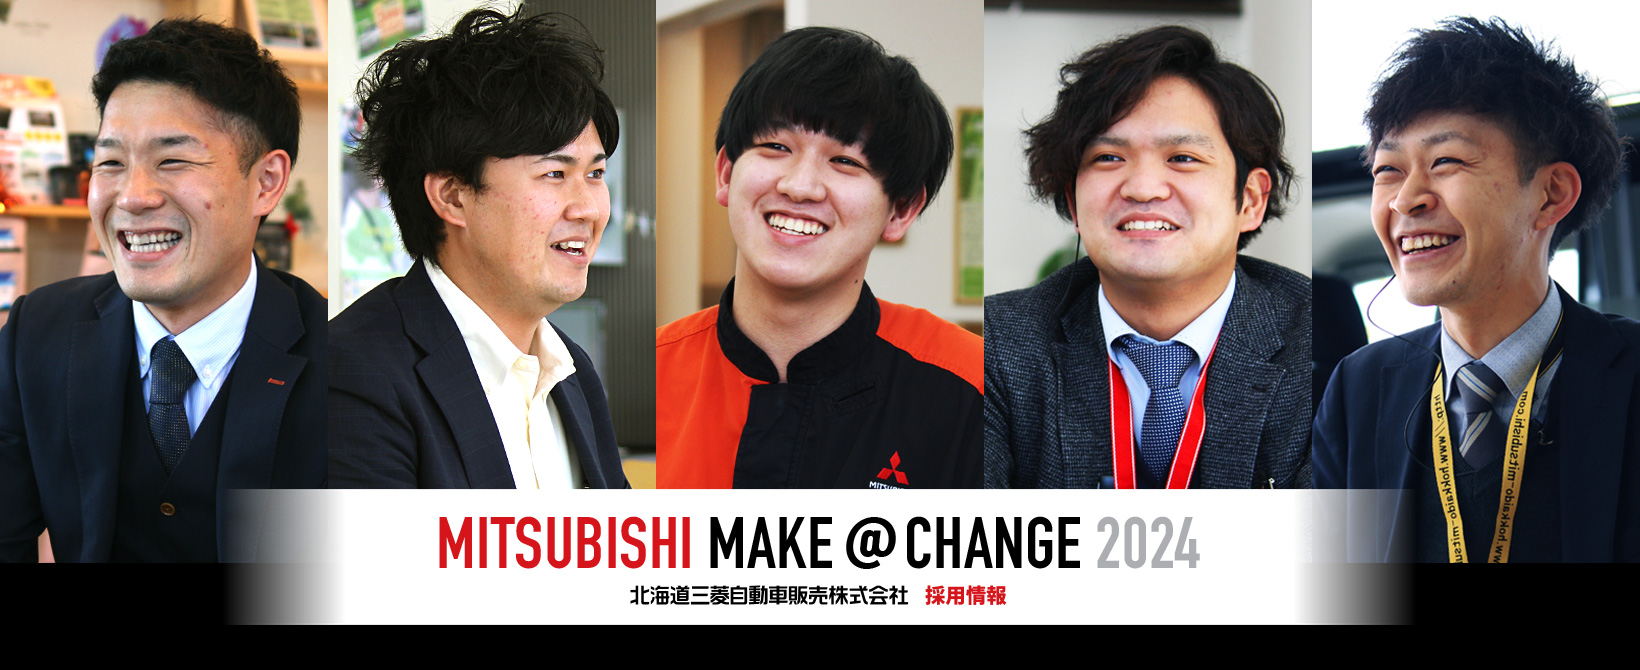 MITSUBISHI MAKE @ CHANGE 2024